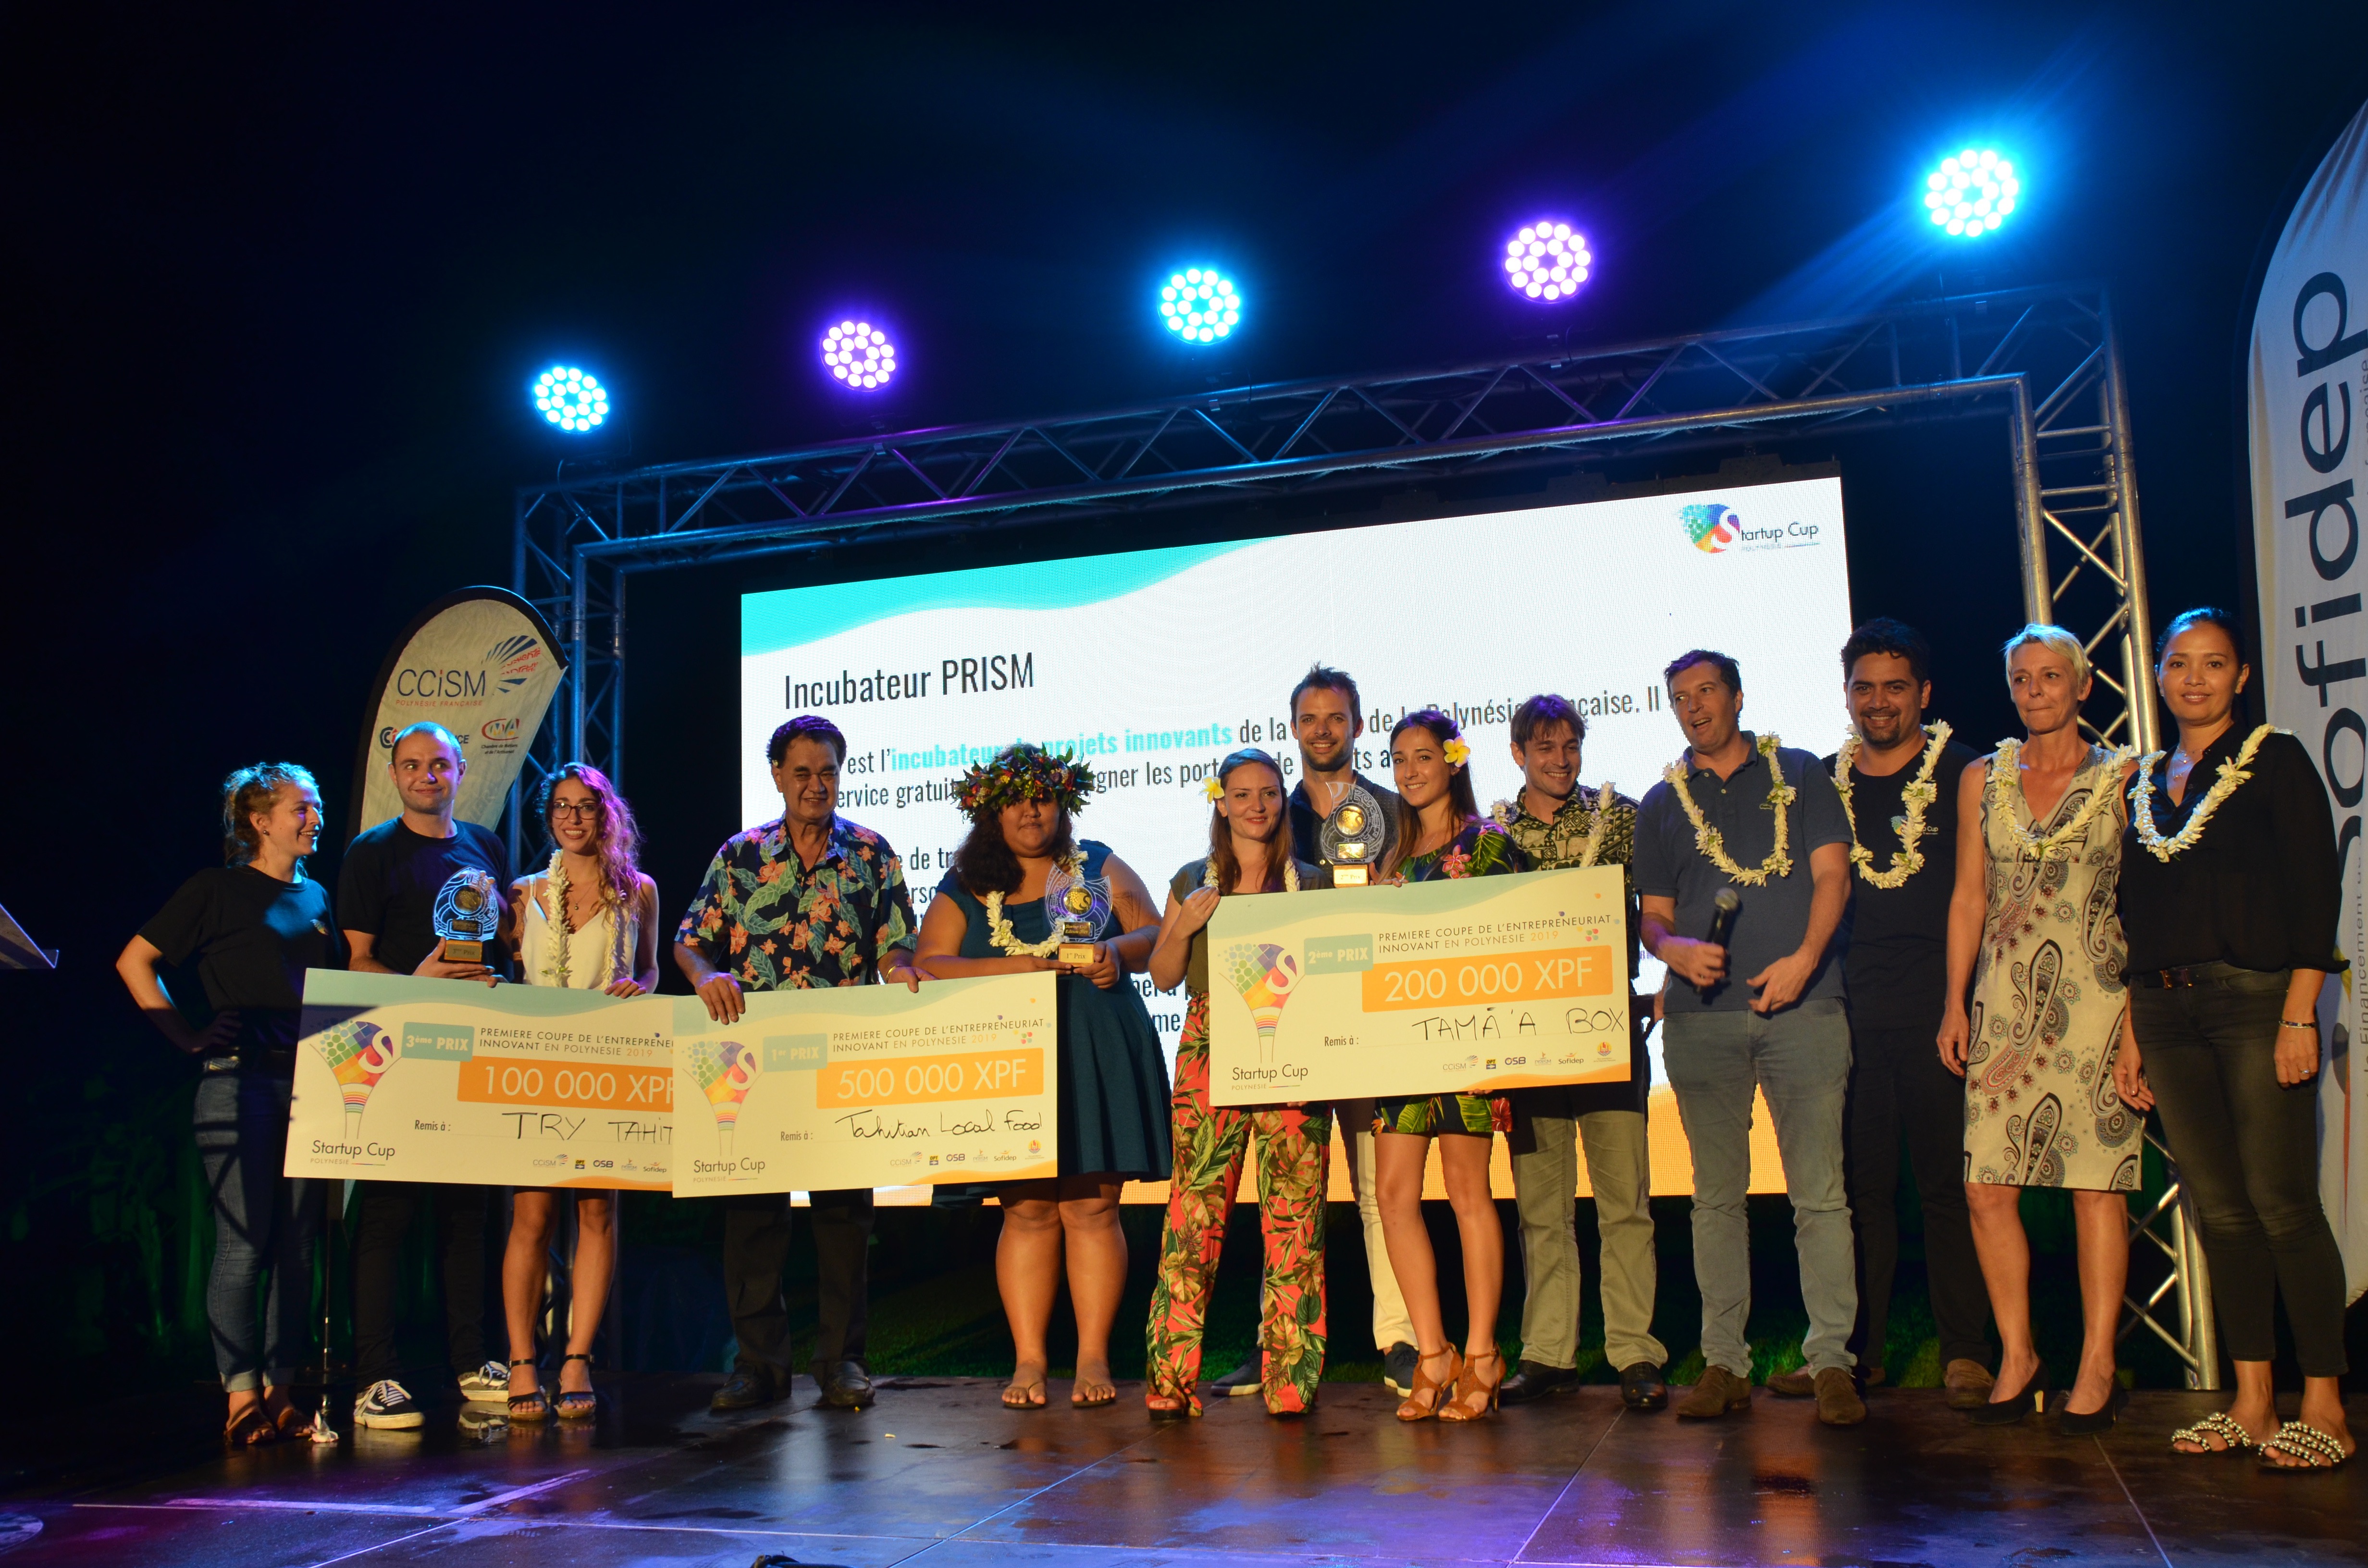 La remise des prix de la StartupCup a eu lieu dans les jardins de l'assemblée.